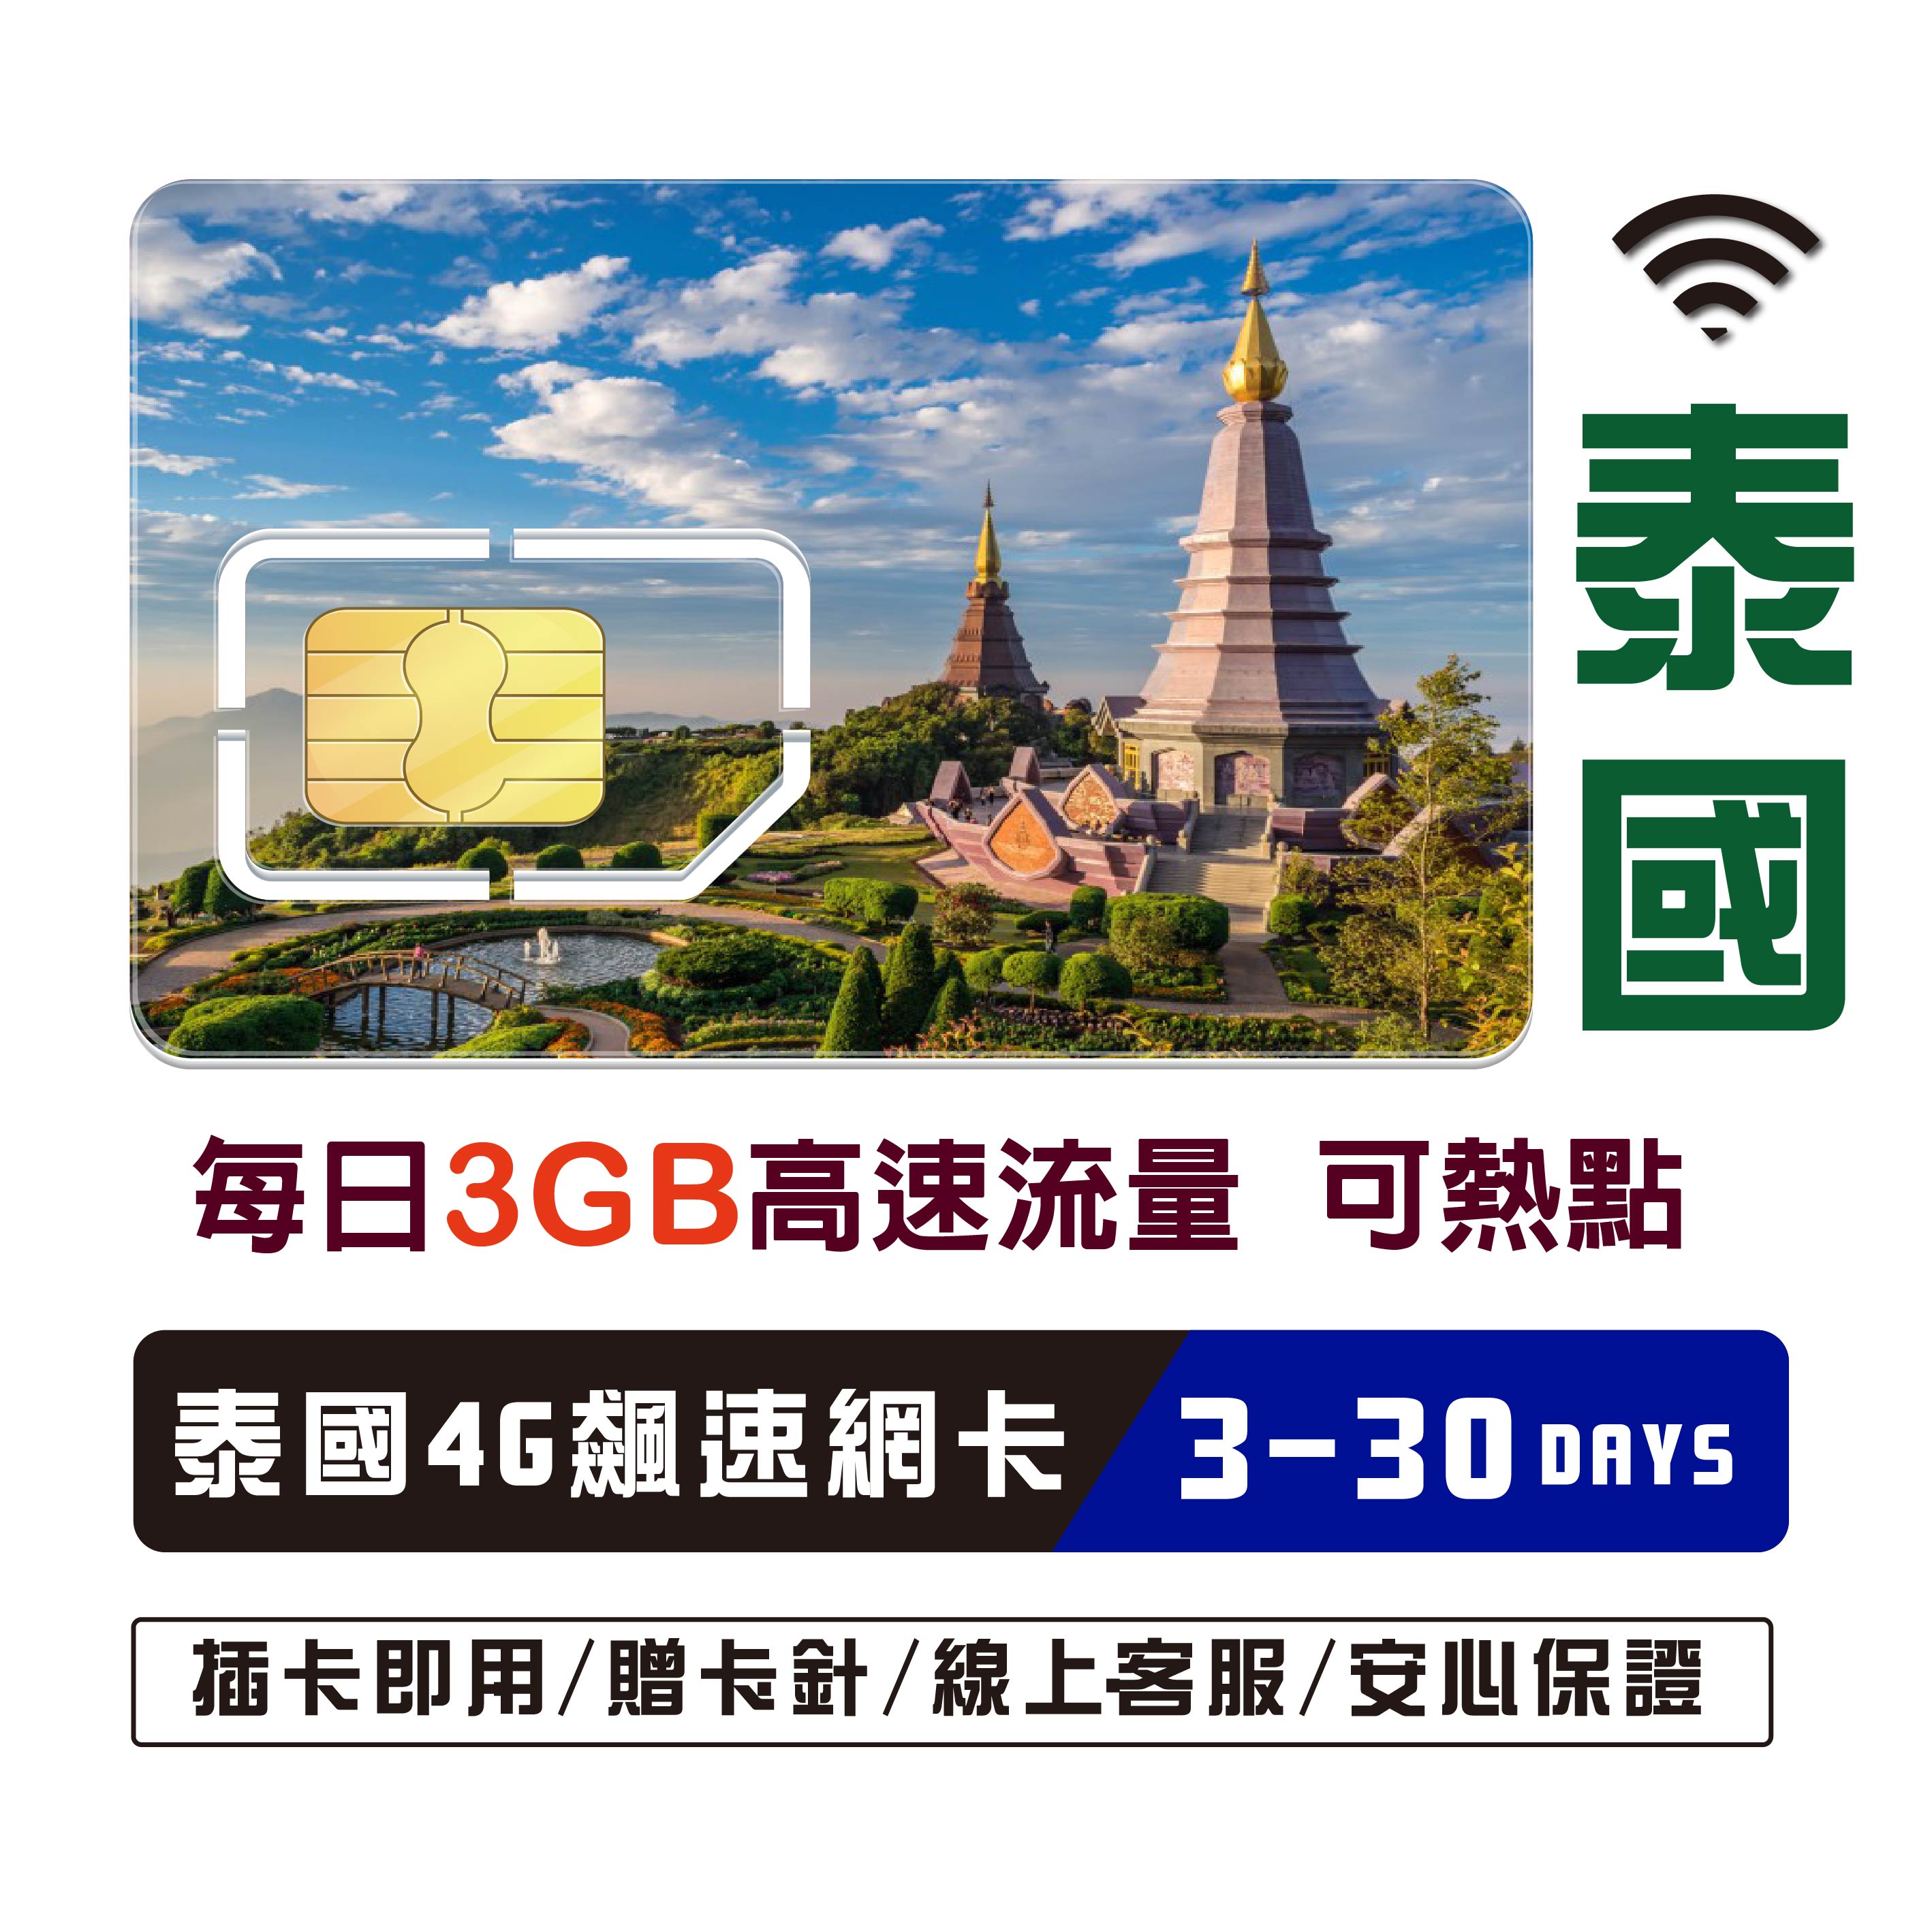 泰國網卡 高速流量不斷網 網路卡 泰國SIM卡 曼谷 清邁 普吉島 高速4G LTE 上網 可聊聊訂製天數